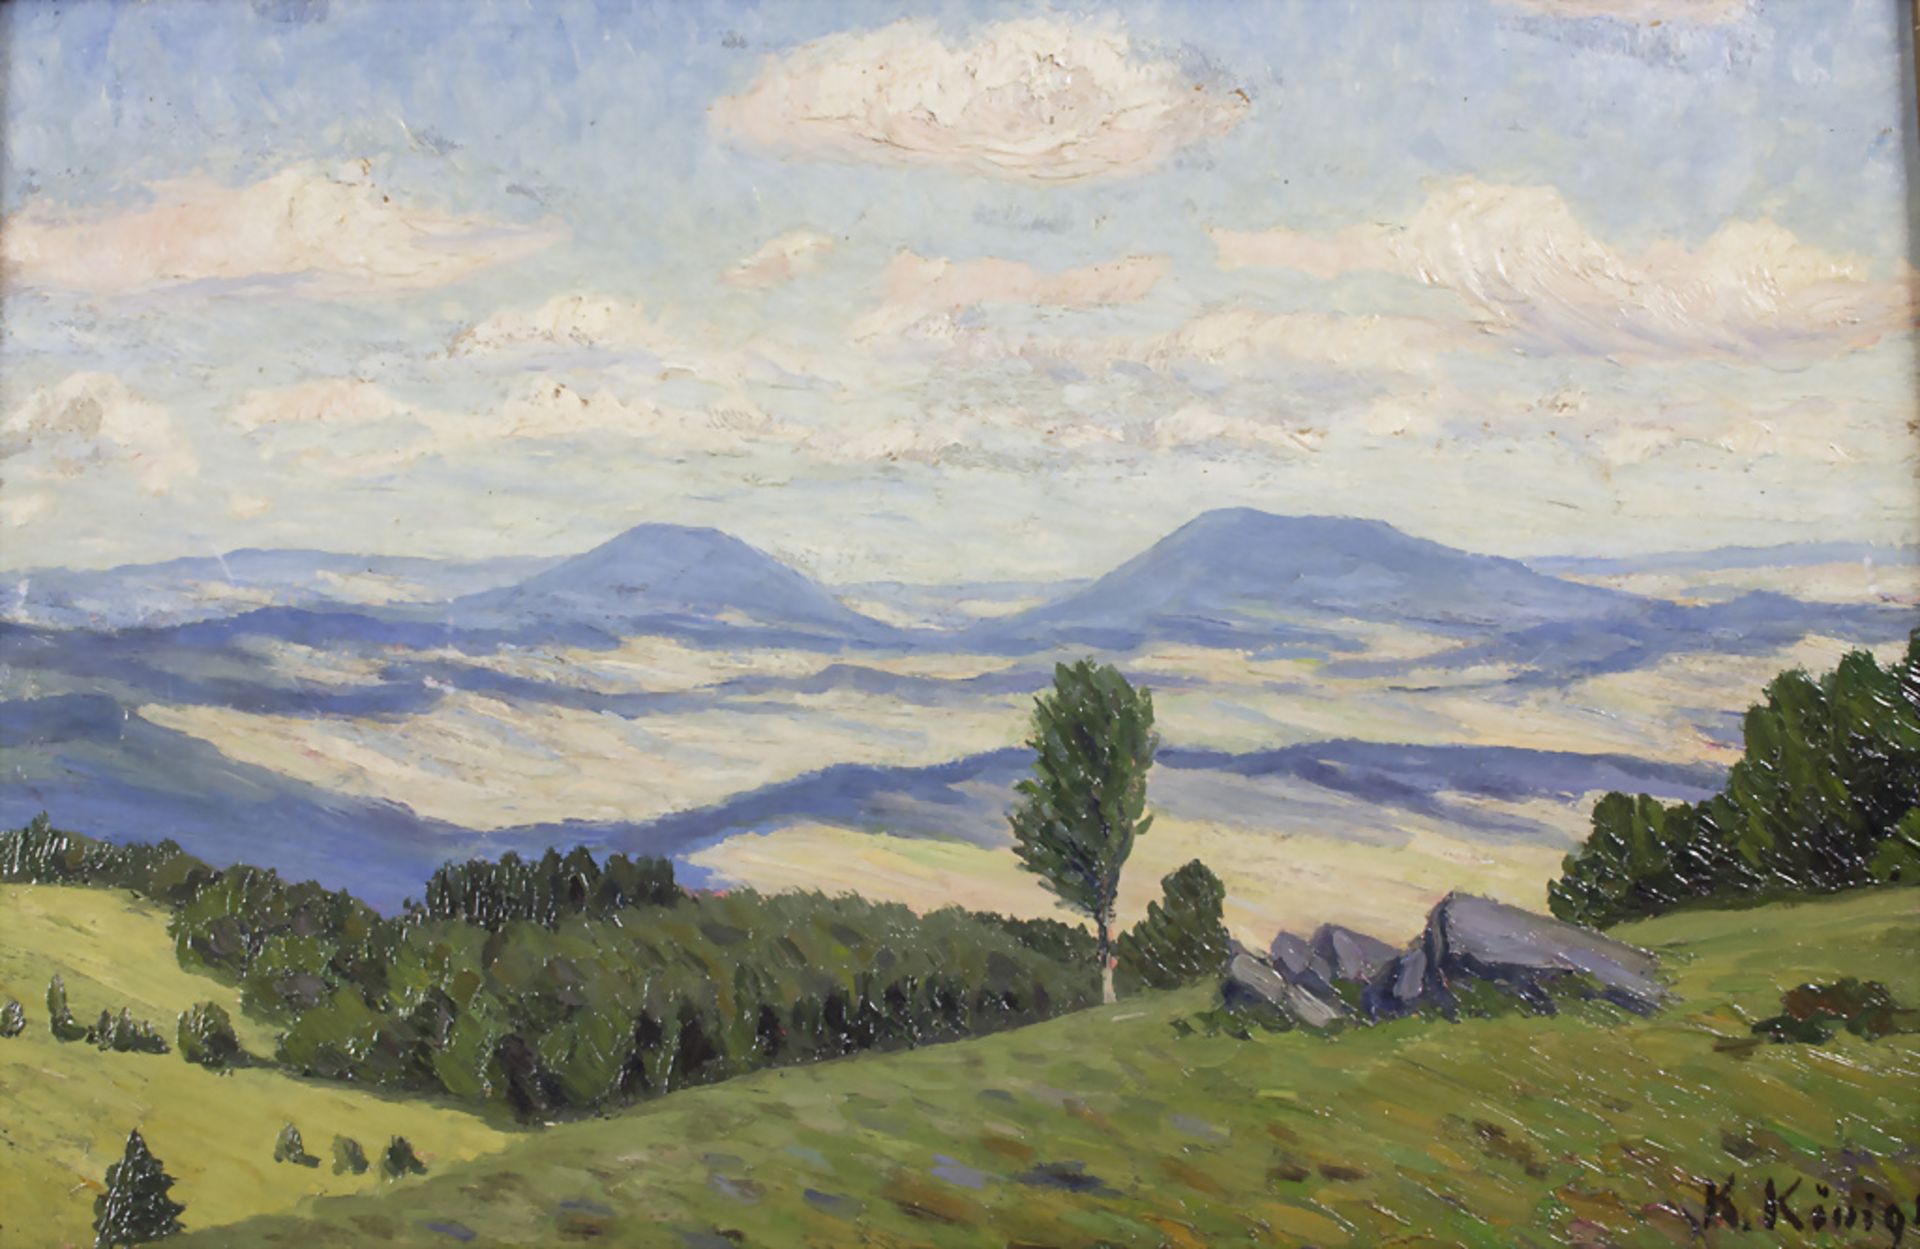 Karl König, 'Rhönlandschaft' / Rhön landscape, 1919